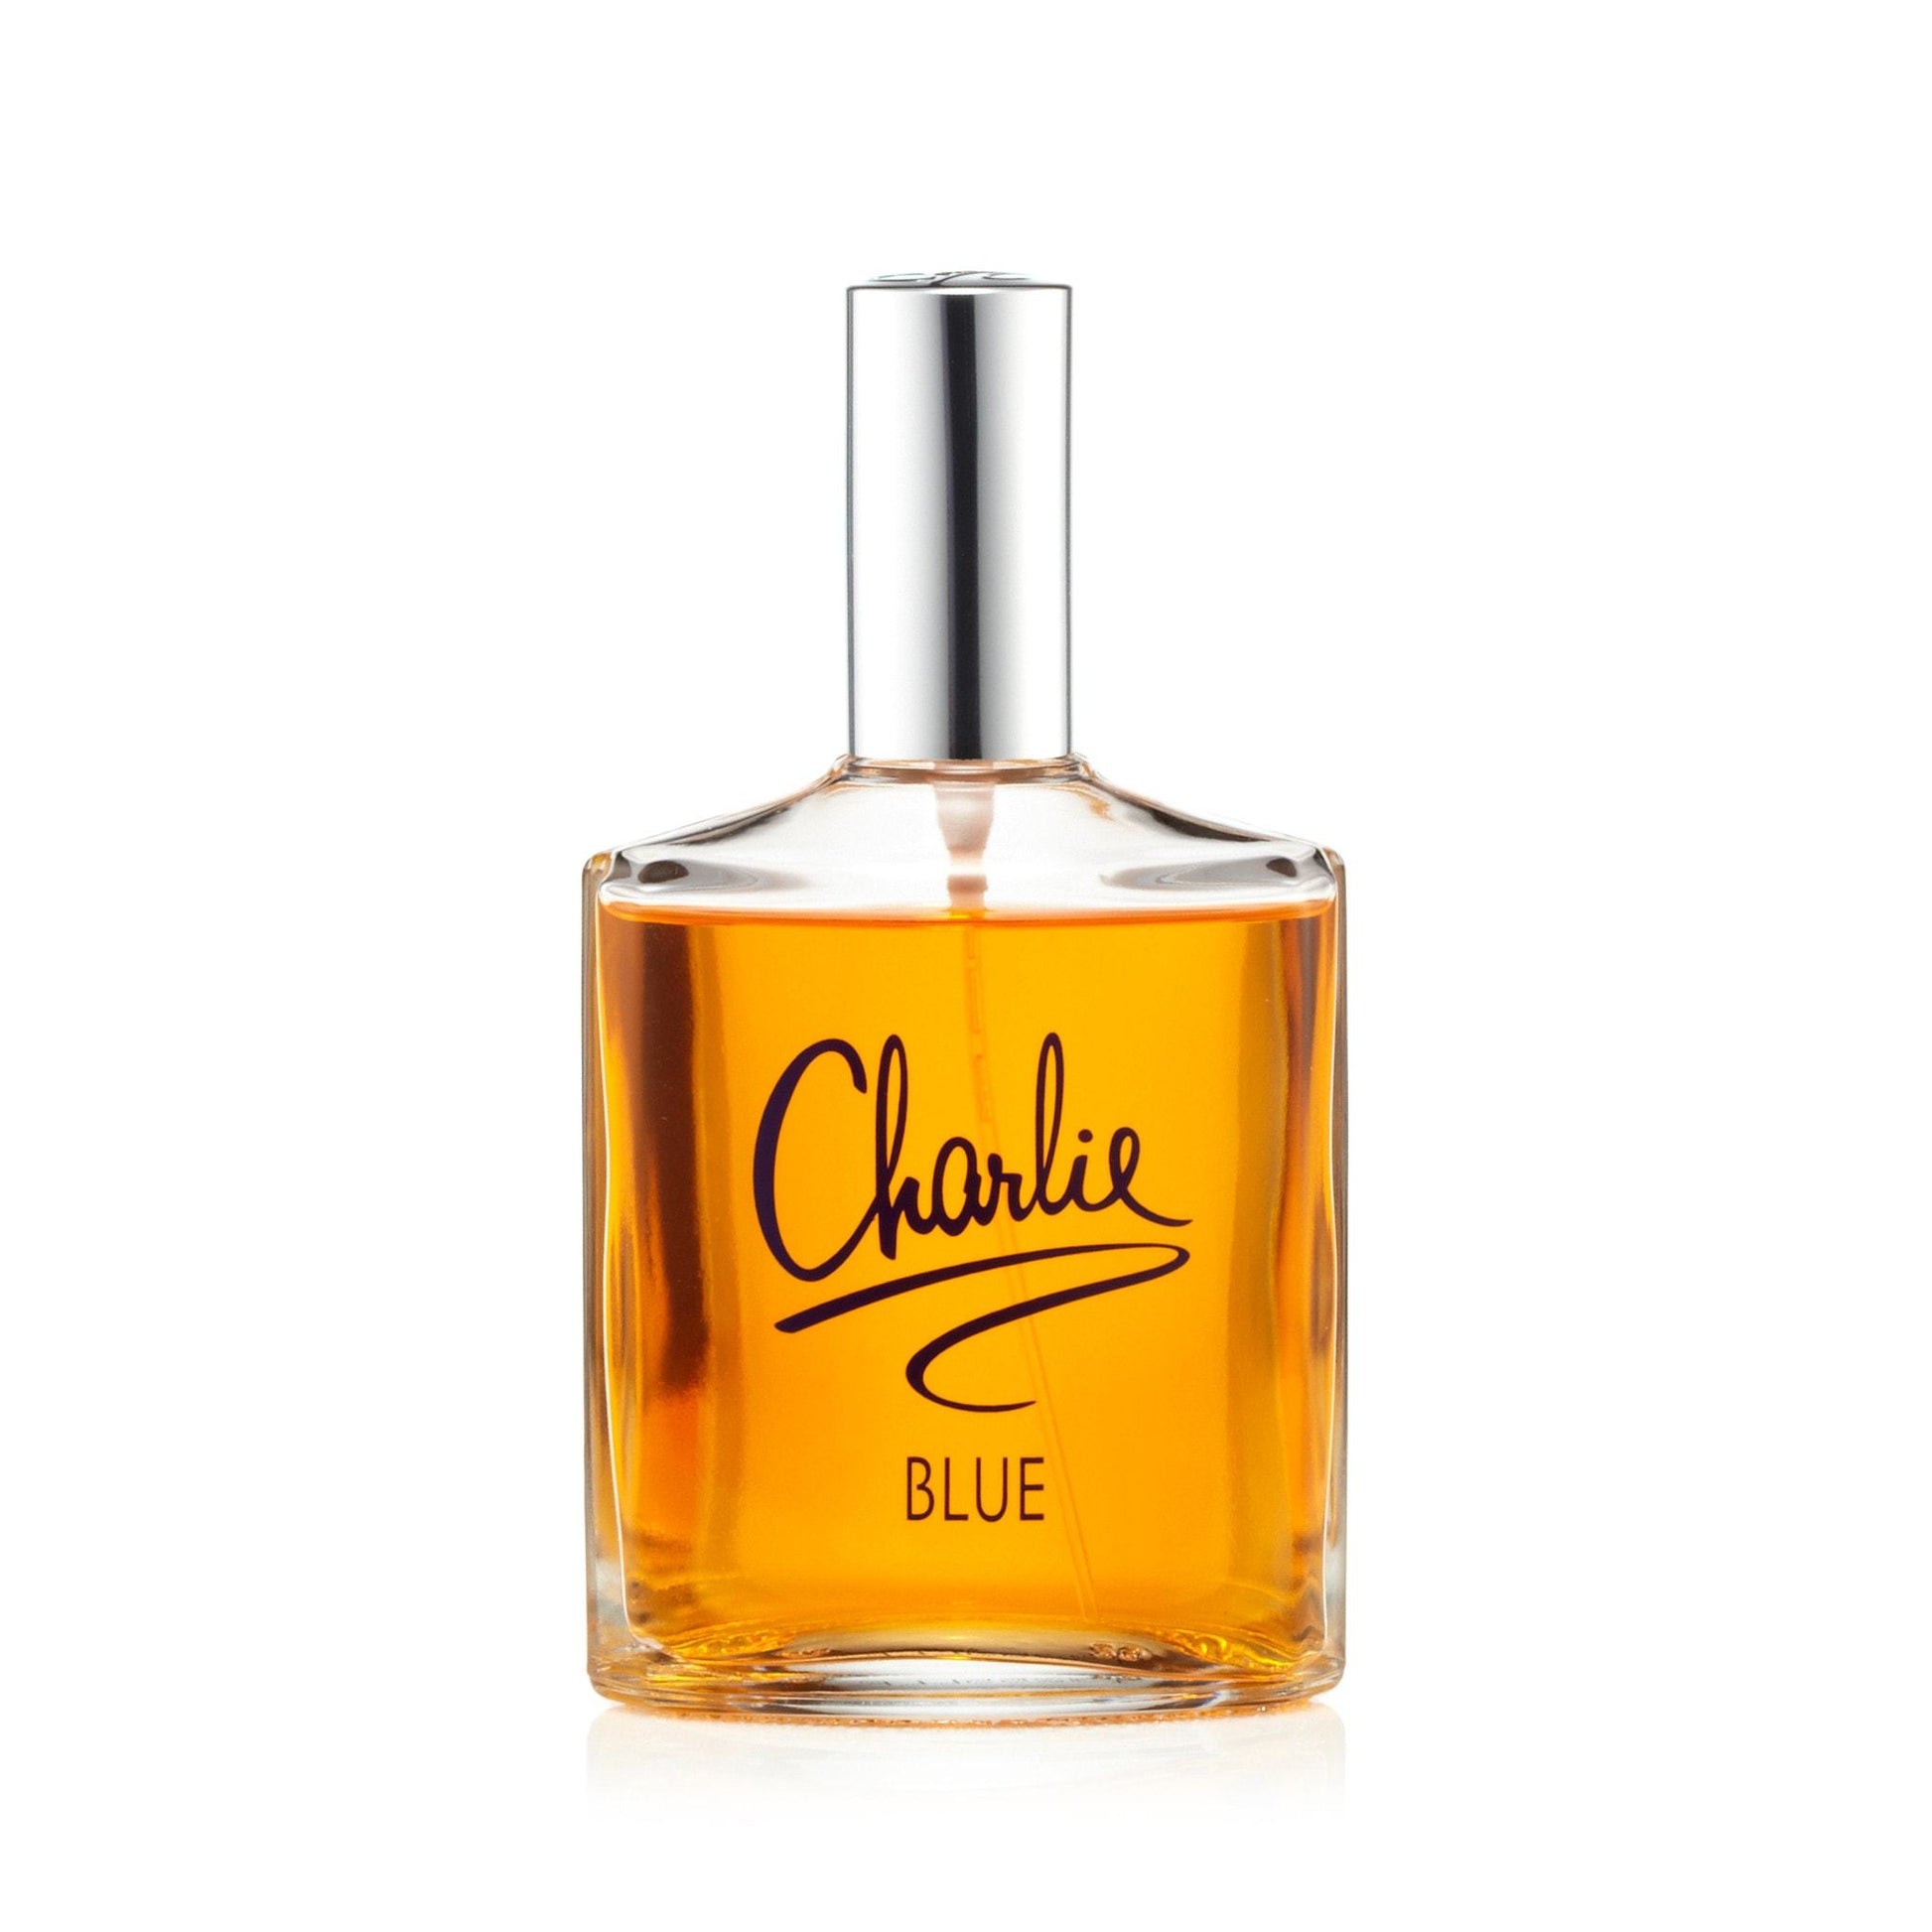 Charlie Blue Eau de Toilette Spray for Women by Revlon, Product image 1